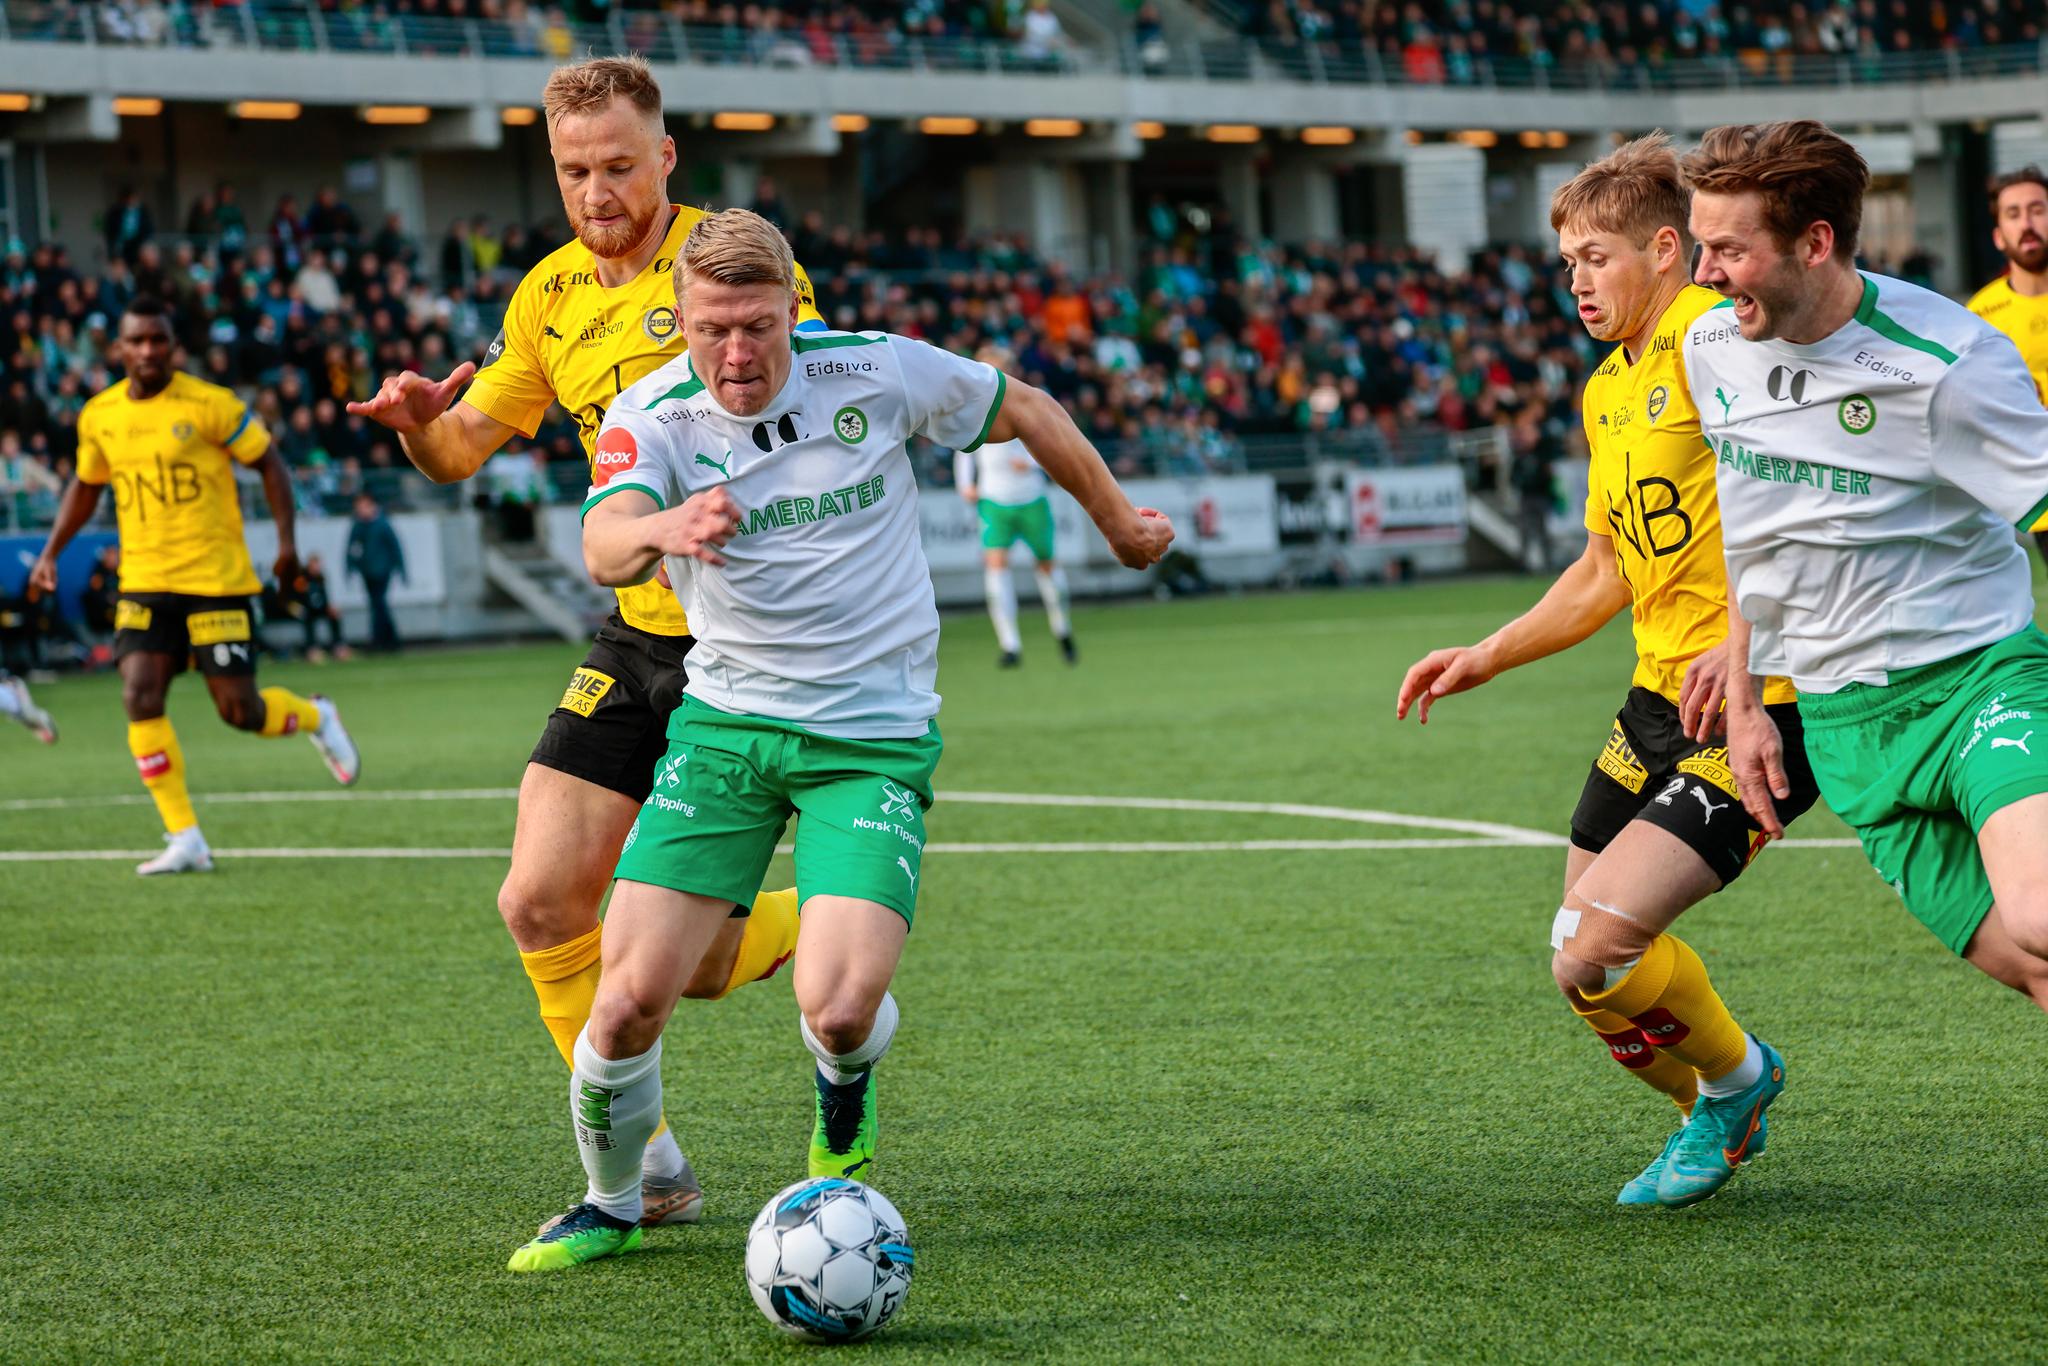 DOMINERTE: Kristian Eriksen leverte en sterk debut i eliteserien.